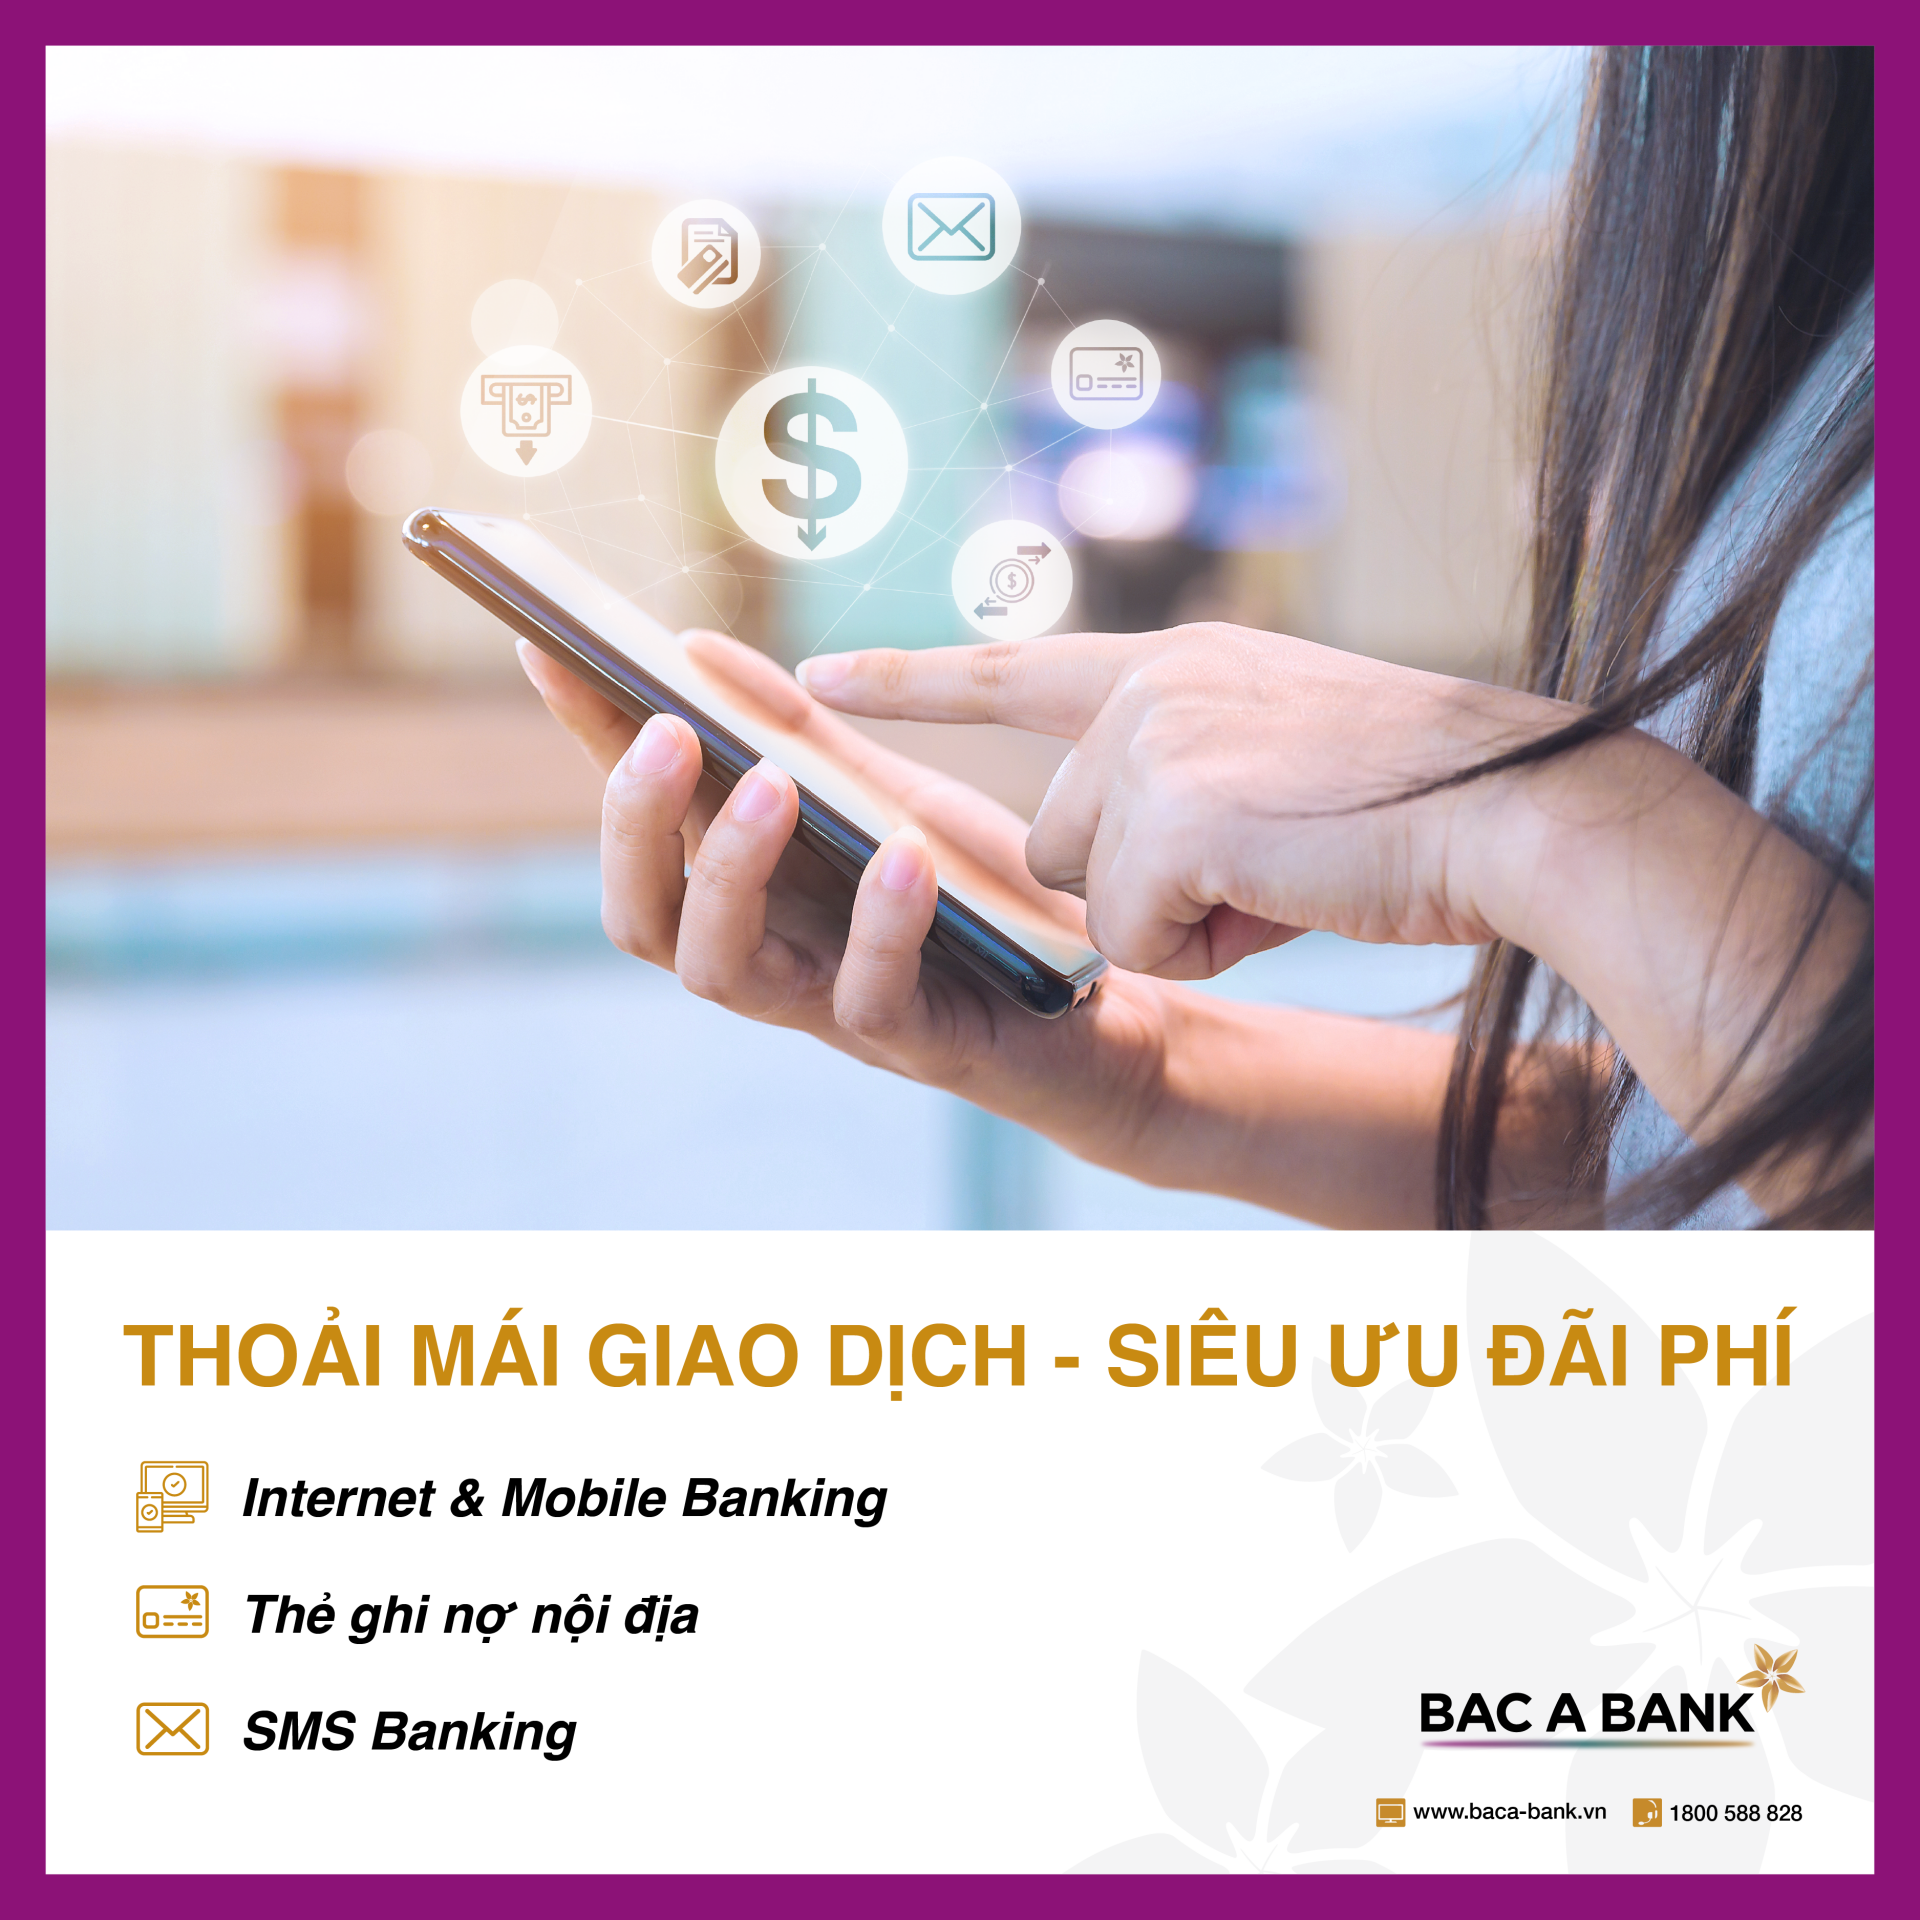 Cách Kiểm Tra và Theo Dõi Phí SMS Banking